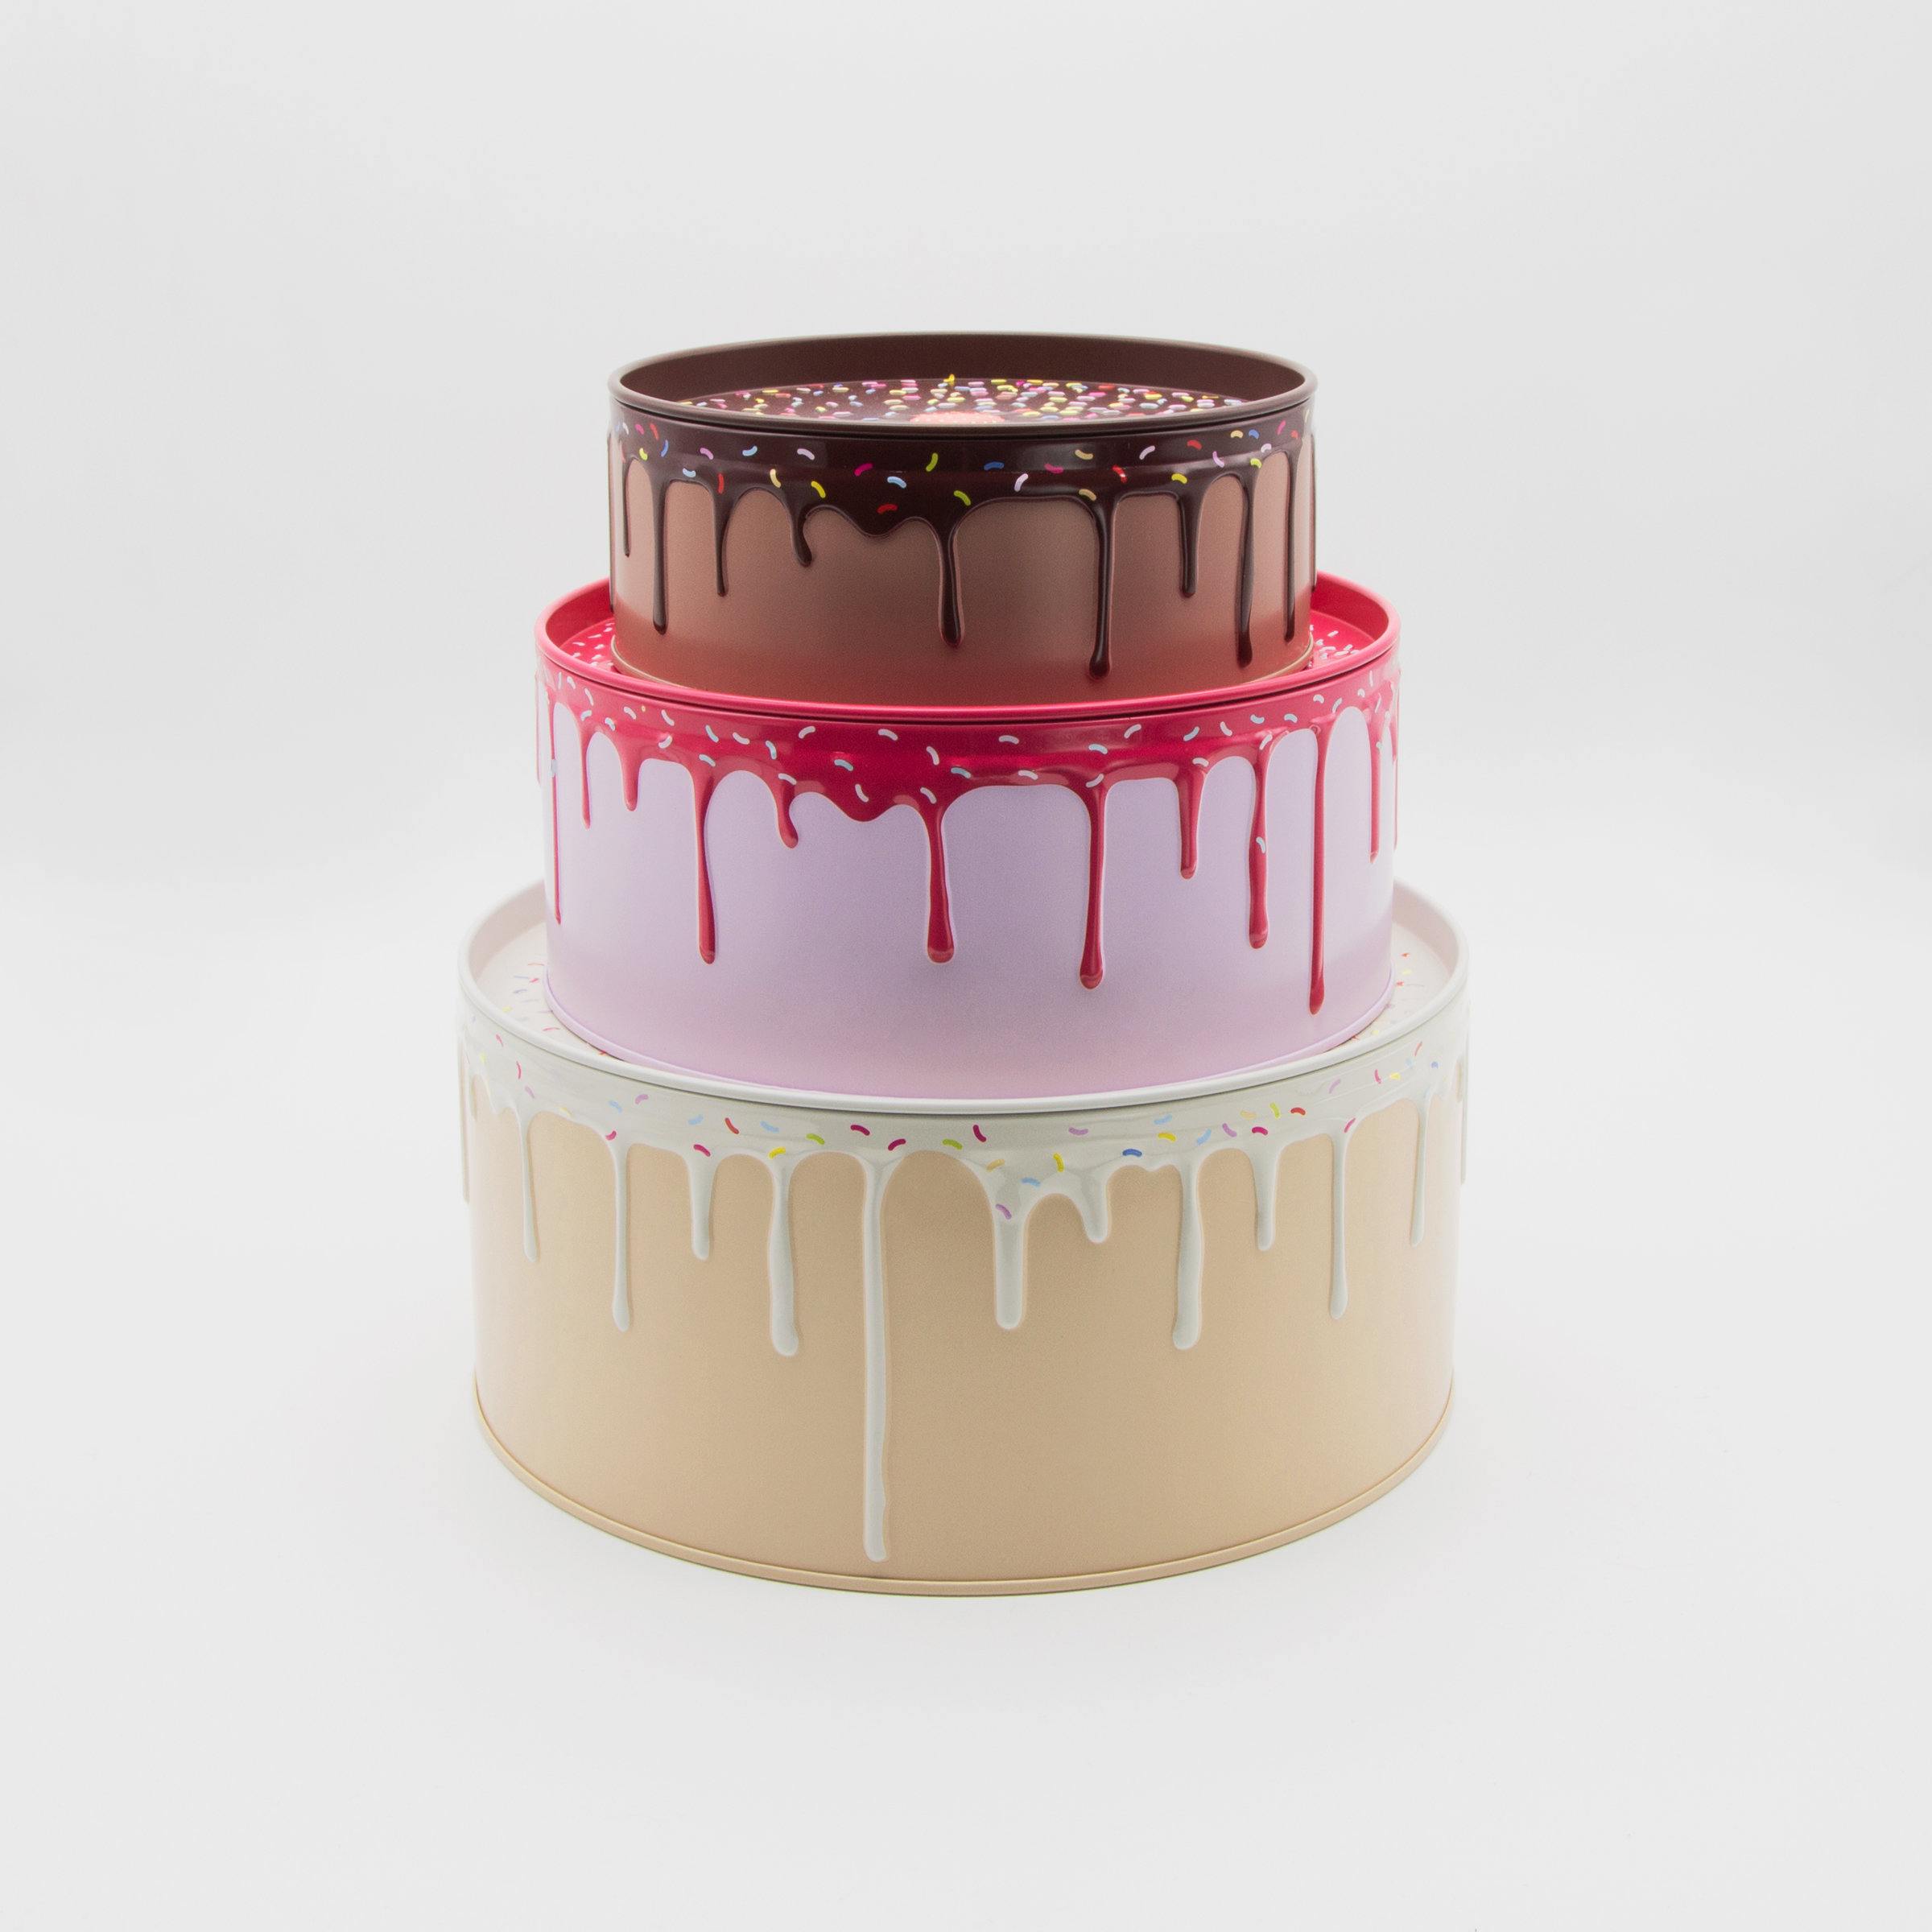 Cake Storage Tins - Set of 3